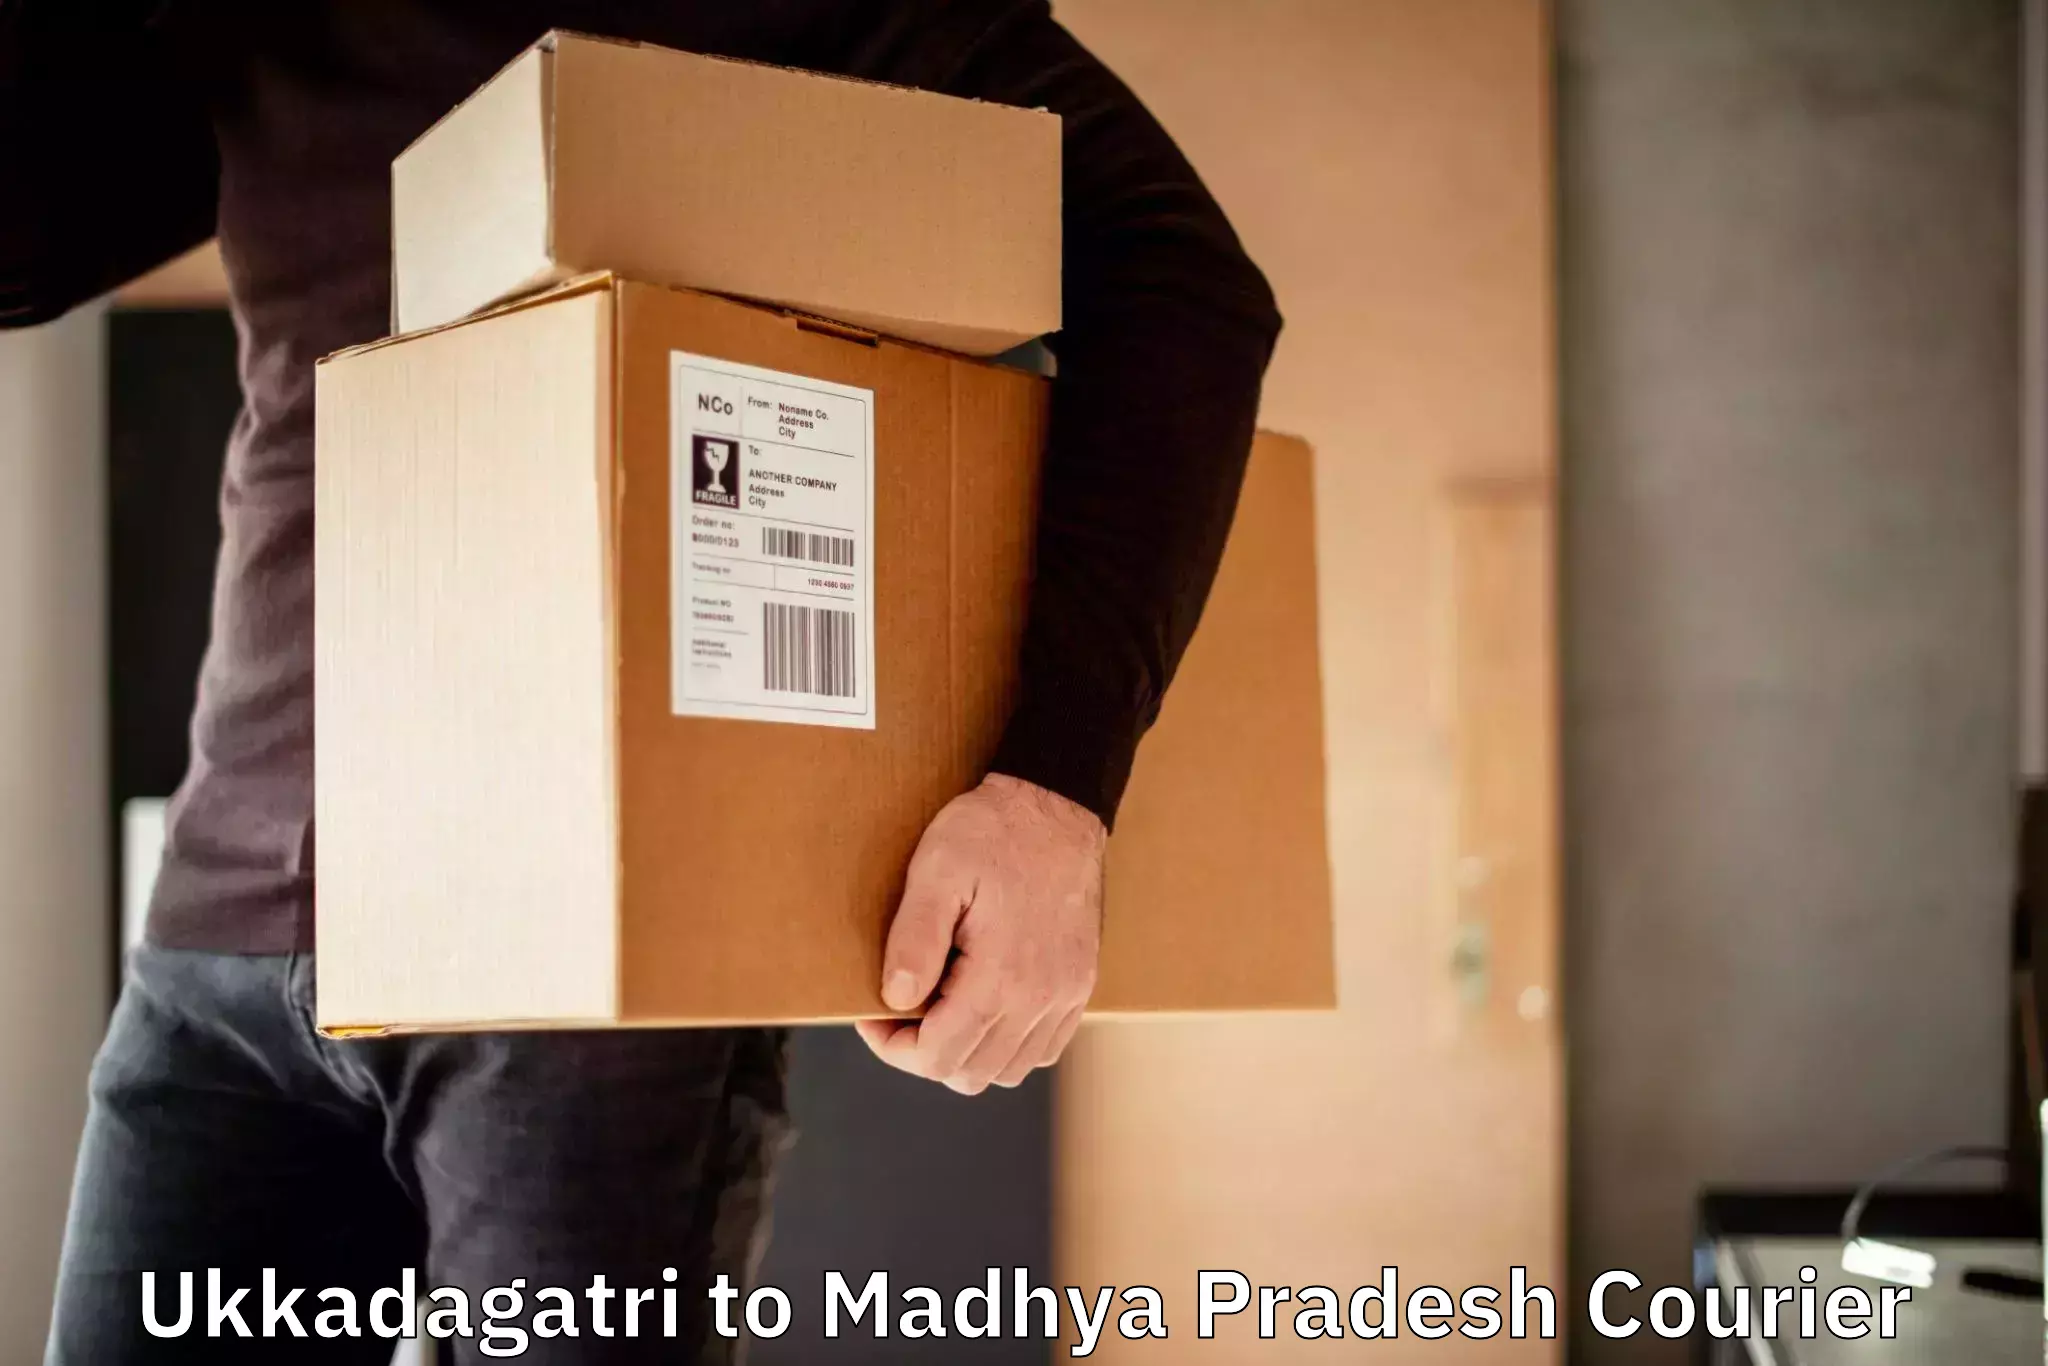 Express courier capabilities Ukkadagatri to Chand Chaurai